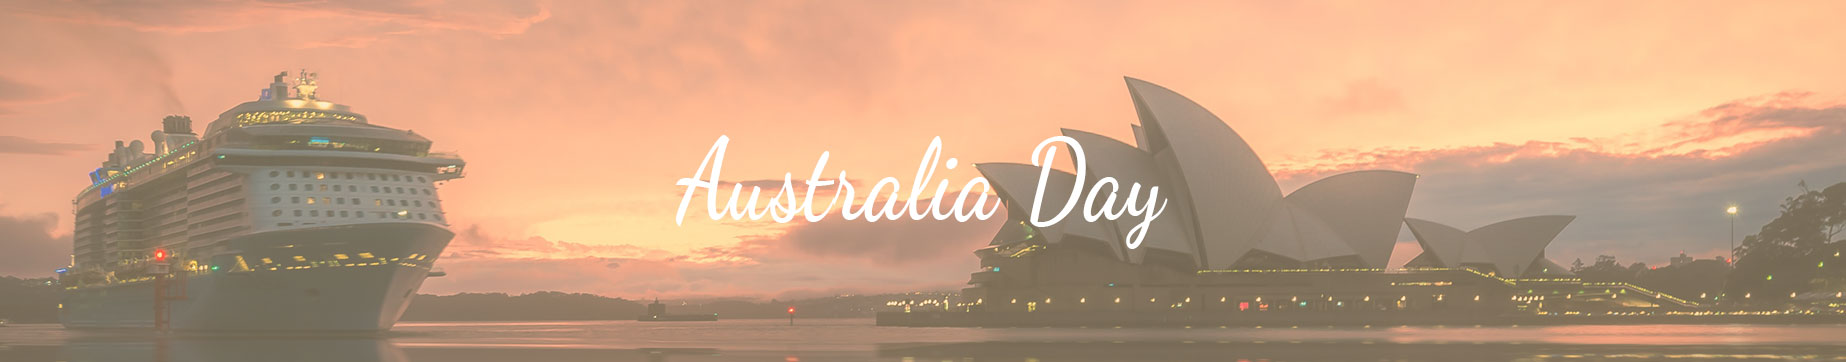 Celebrations Australia Day Under $10